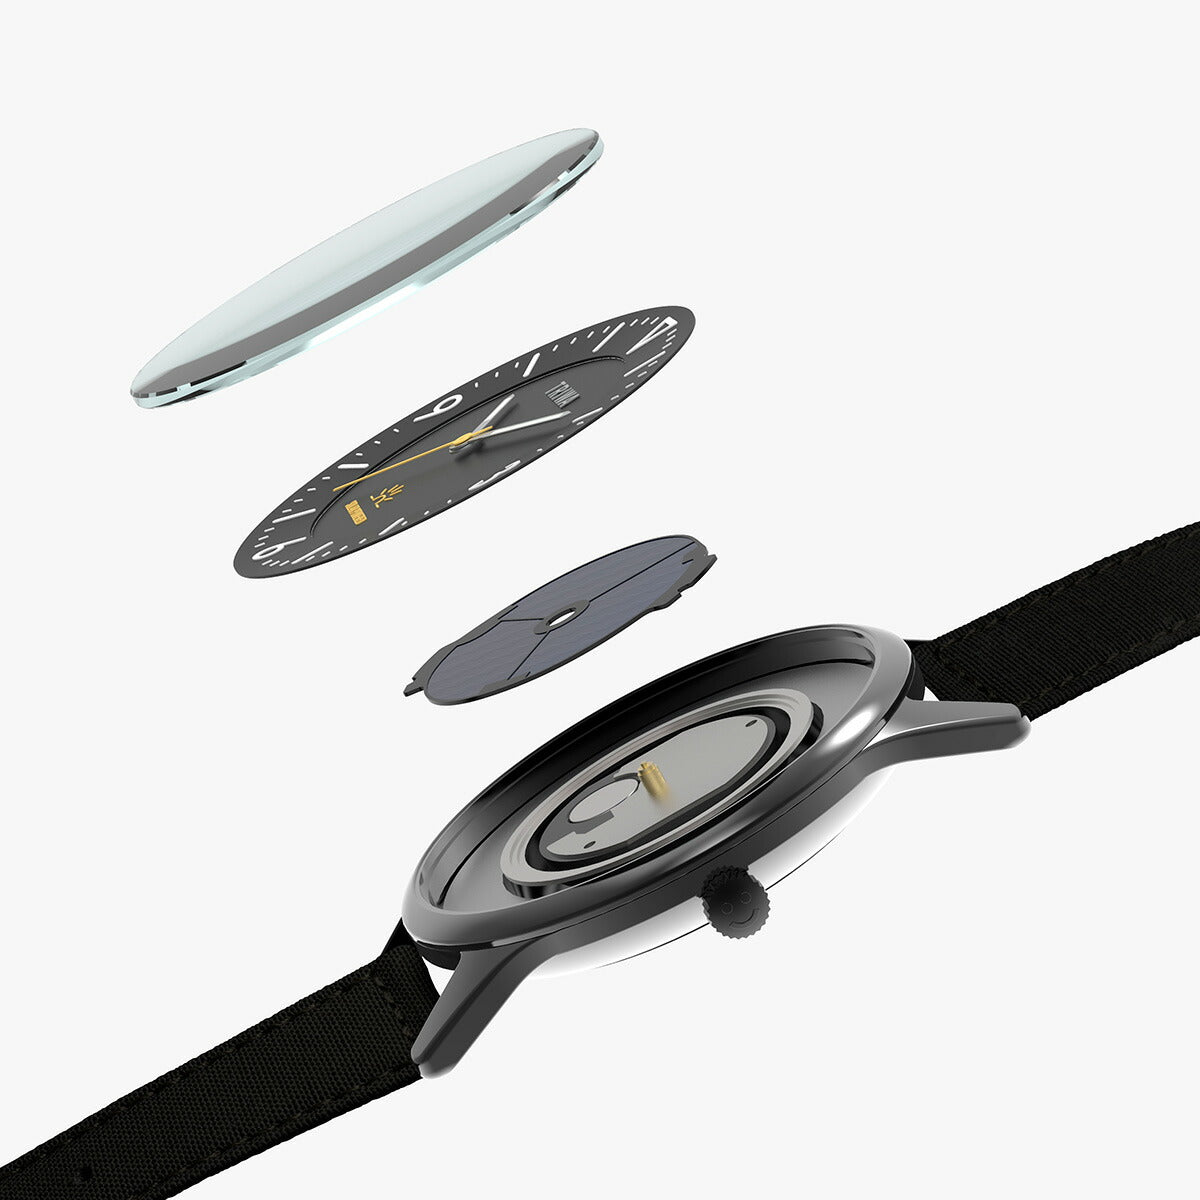 トリワ TRIWA 腕時計 メンズ ソーラー TIME FOR SOLAR SOL101-CL080912